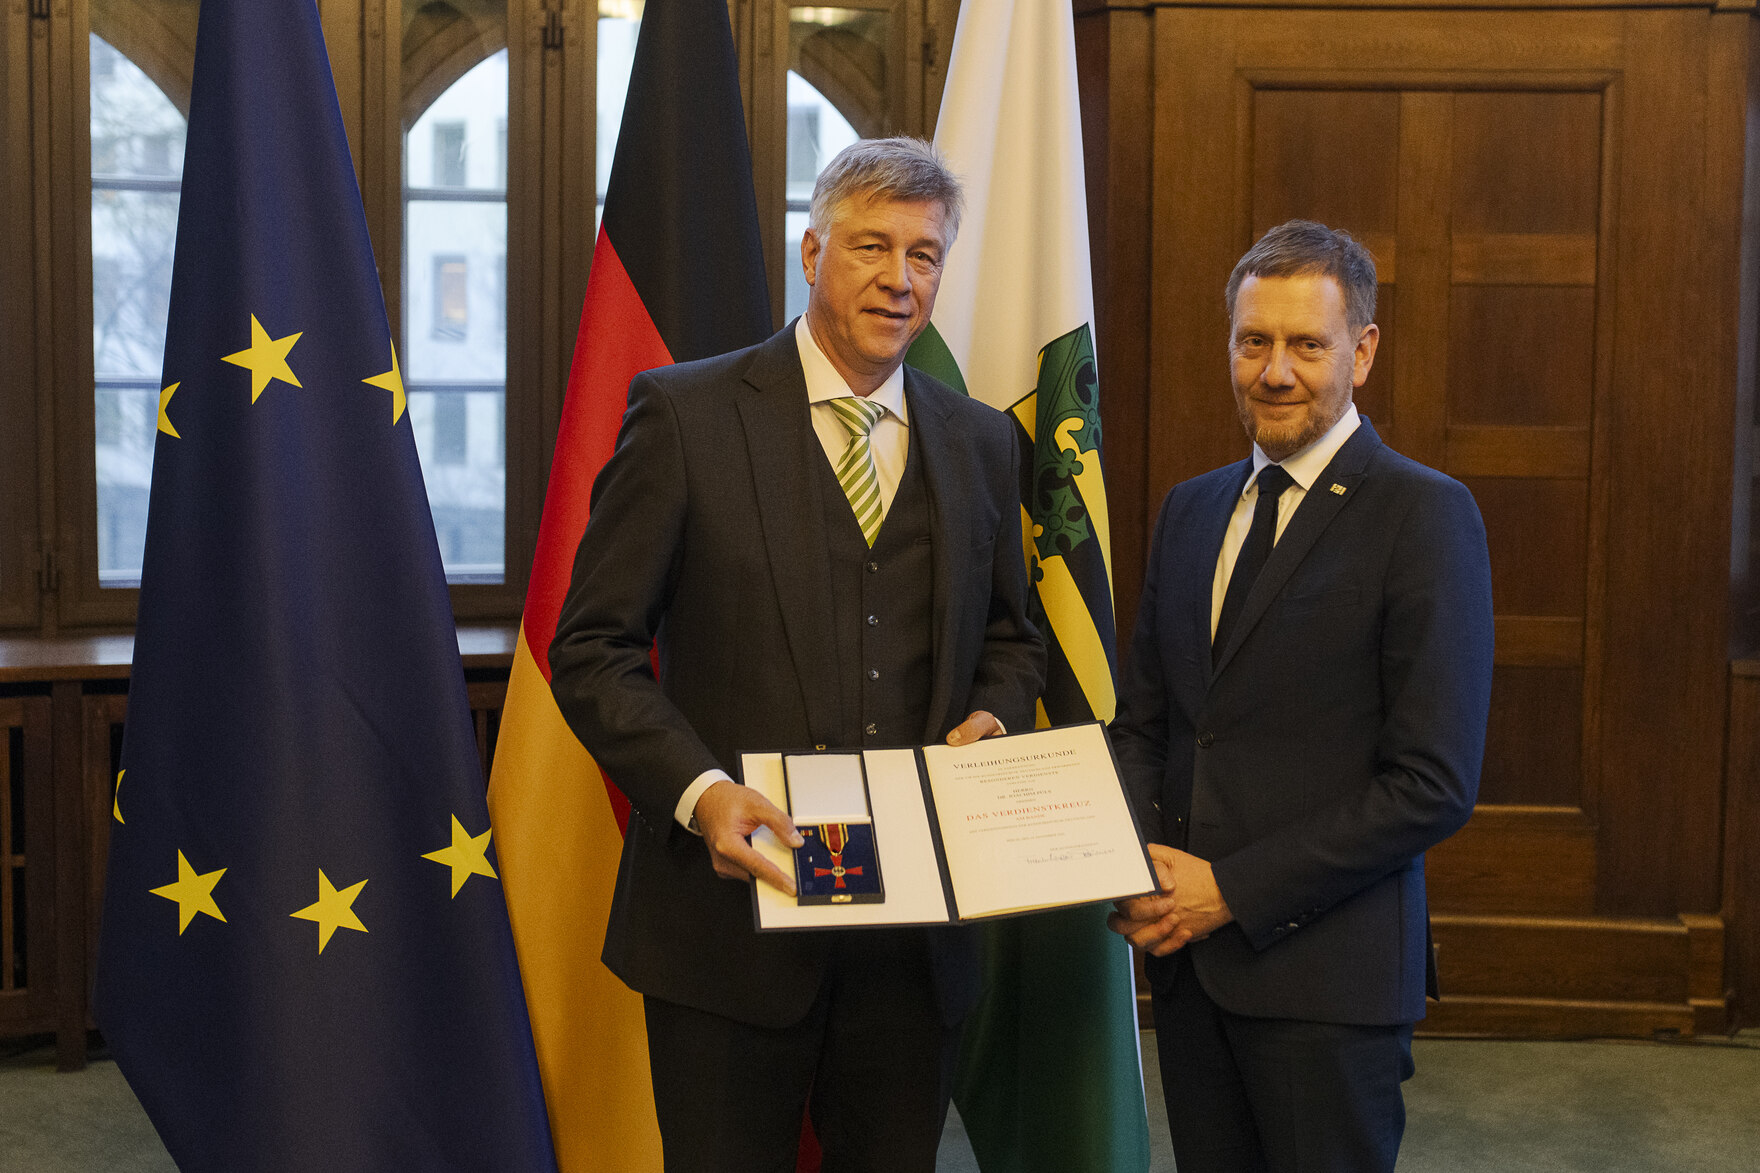 Zwei Männer in einem Raum, der Mann links hält eine offene Präsentationsmappe mit einer Auszeichnung, im Hintergrund die Flaggen der EU, Deutschlands und Sachsens.